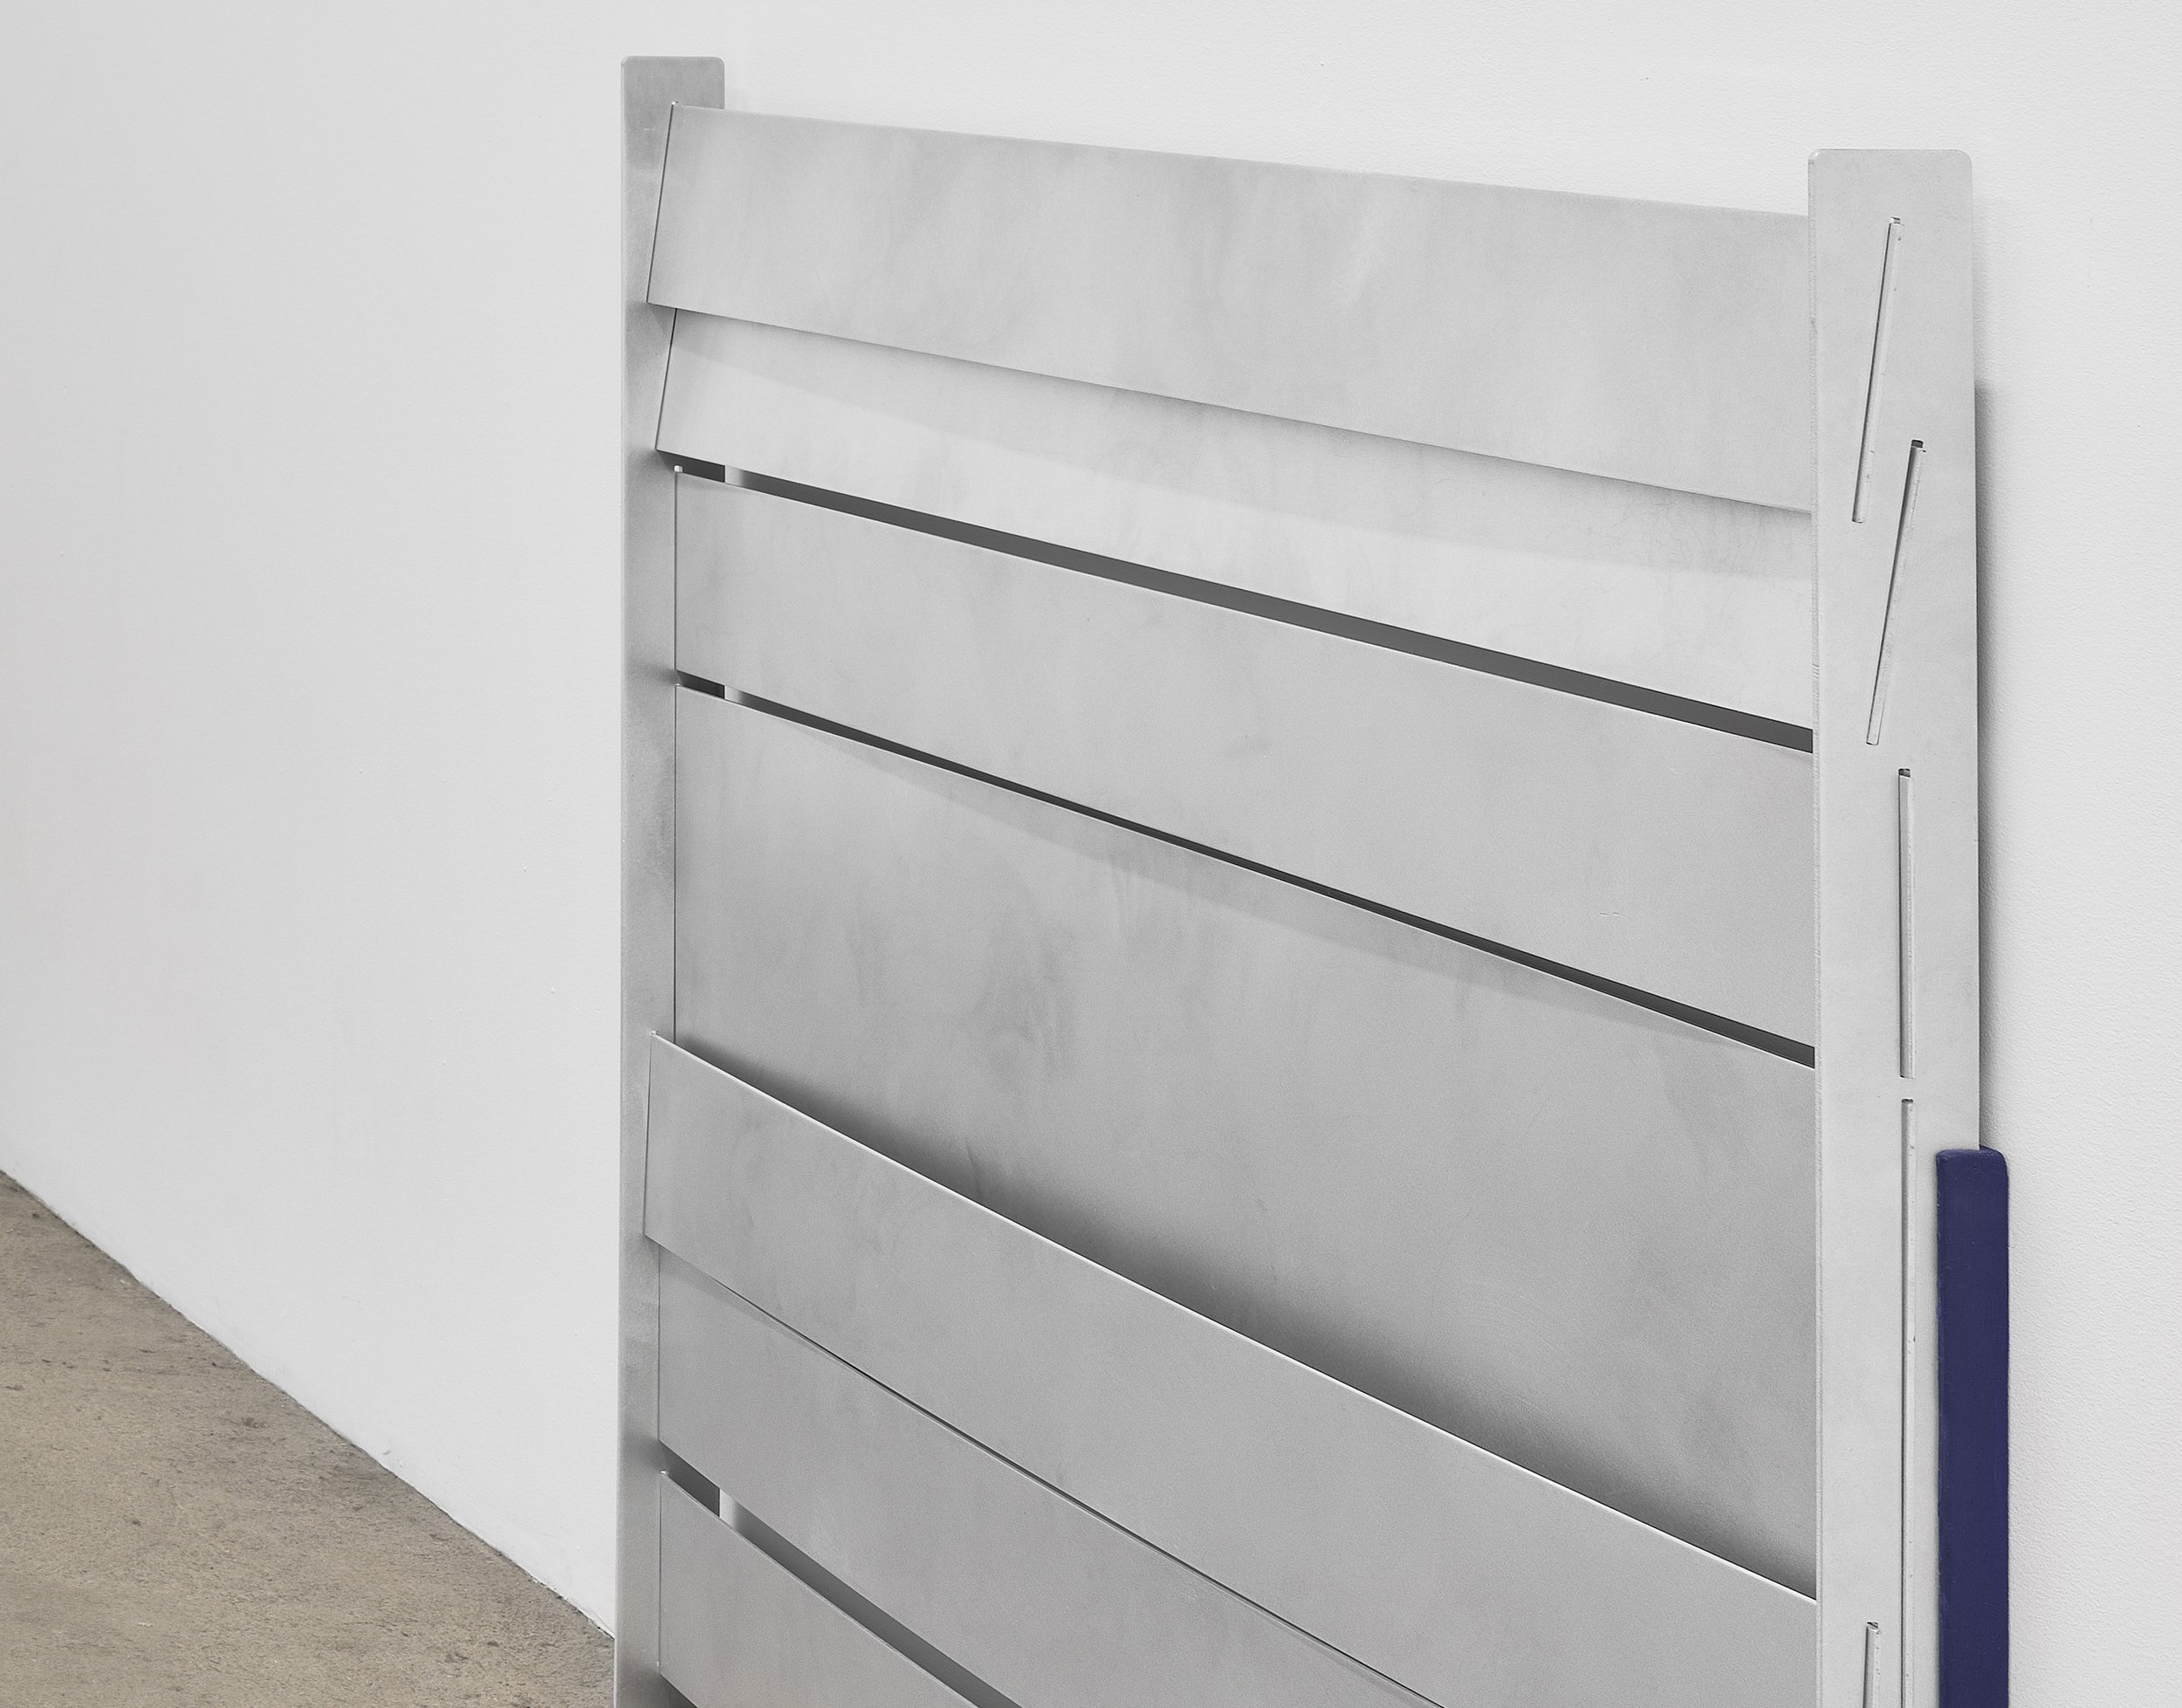  Elizabeth Orr  Indoor,  2022 (detail) aluminum, wood 41 x 48 x 3 inches (122 x 104 x 8 cm)  EO1 